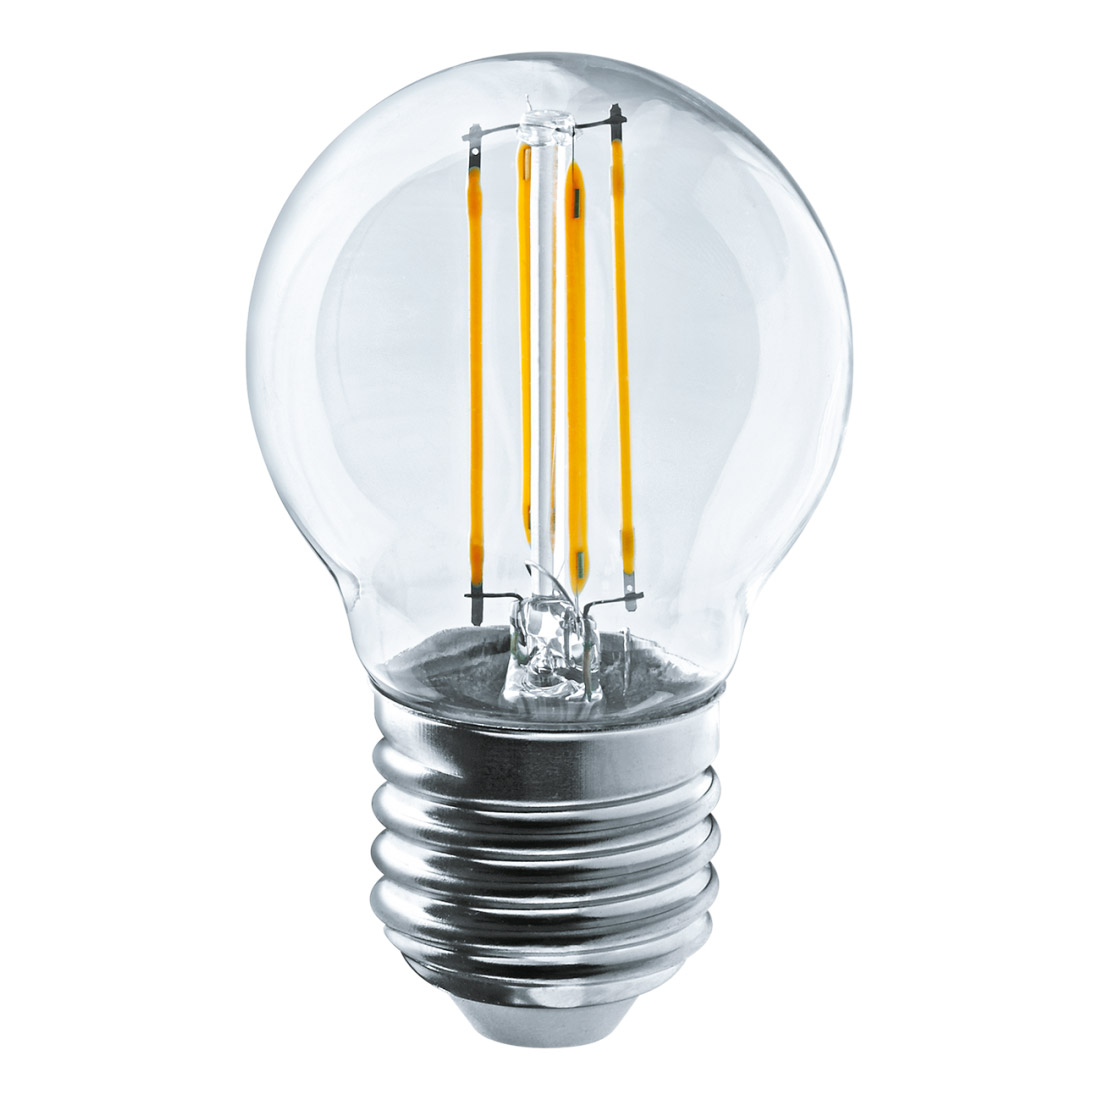 Лампа filament шарик 4вт e27 холодная Navigator 61343 лампа filament груша 6вт e27 холодная navigator 61344